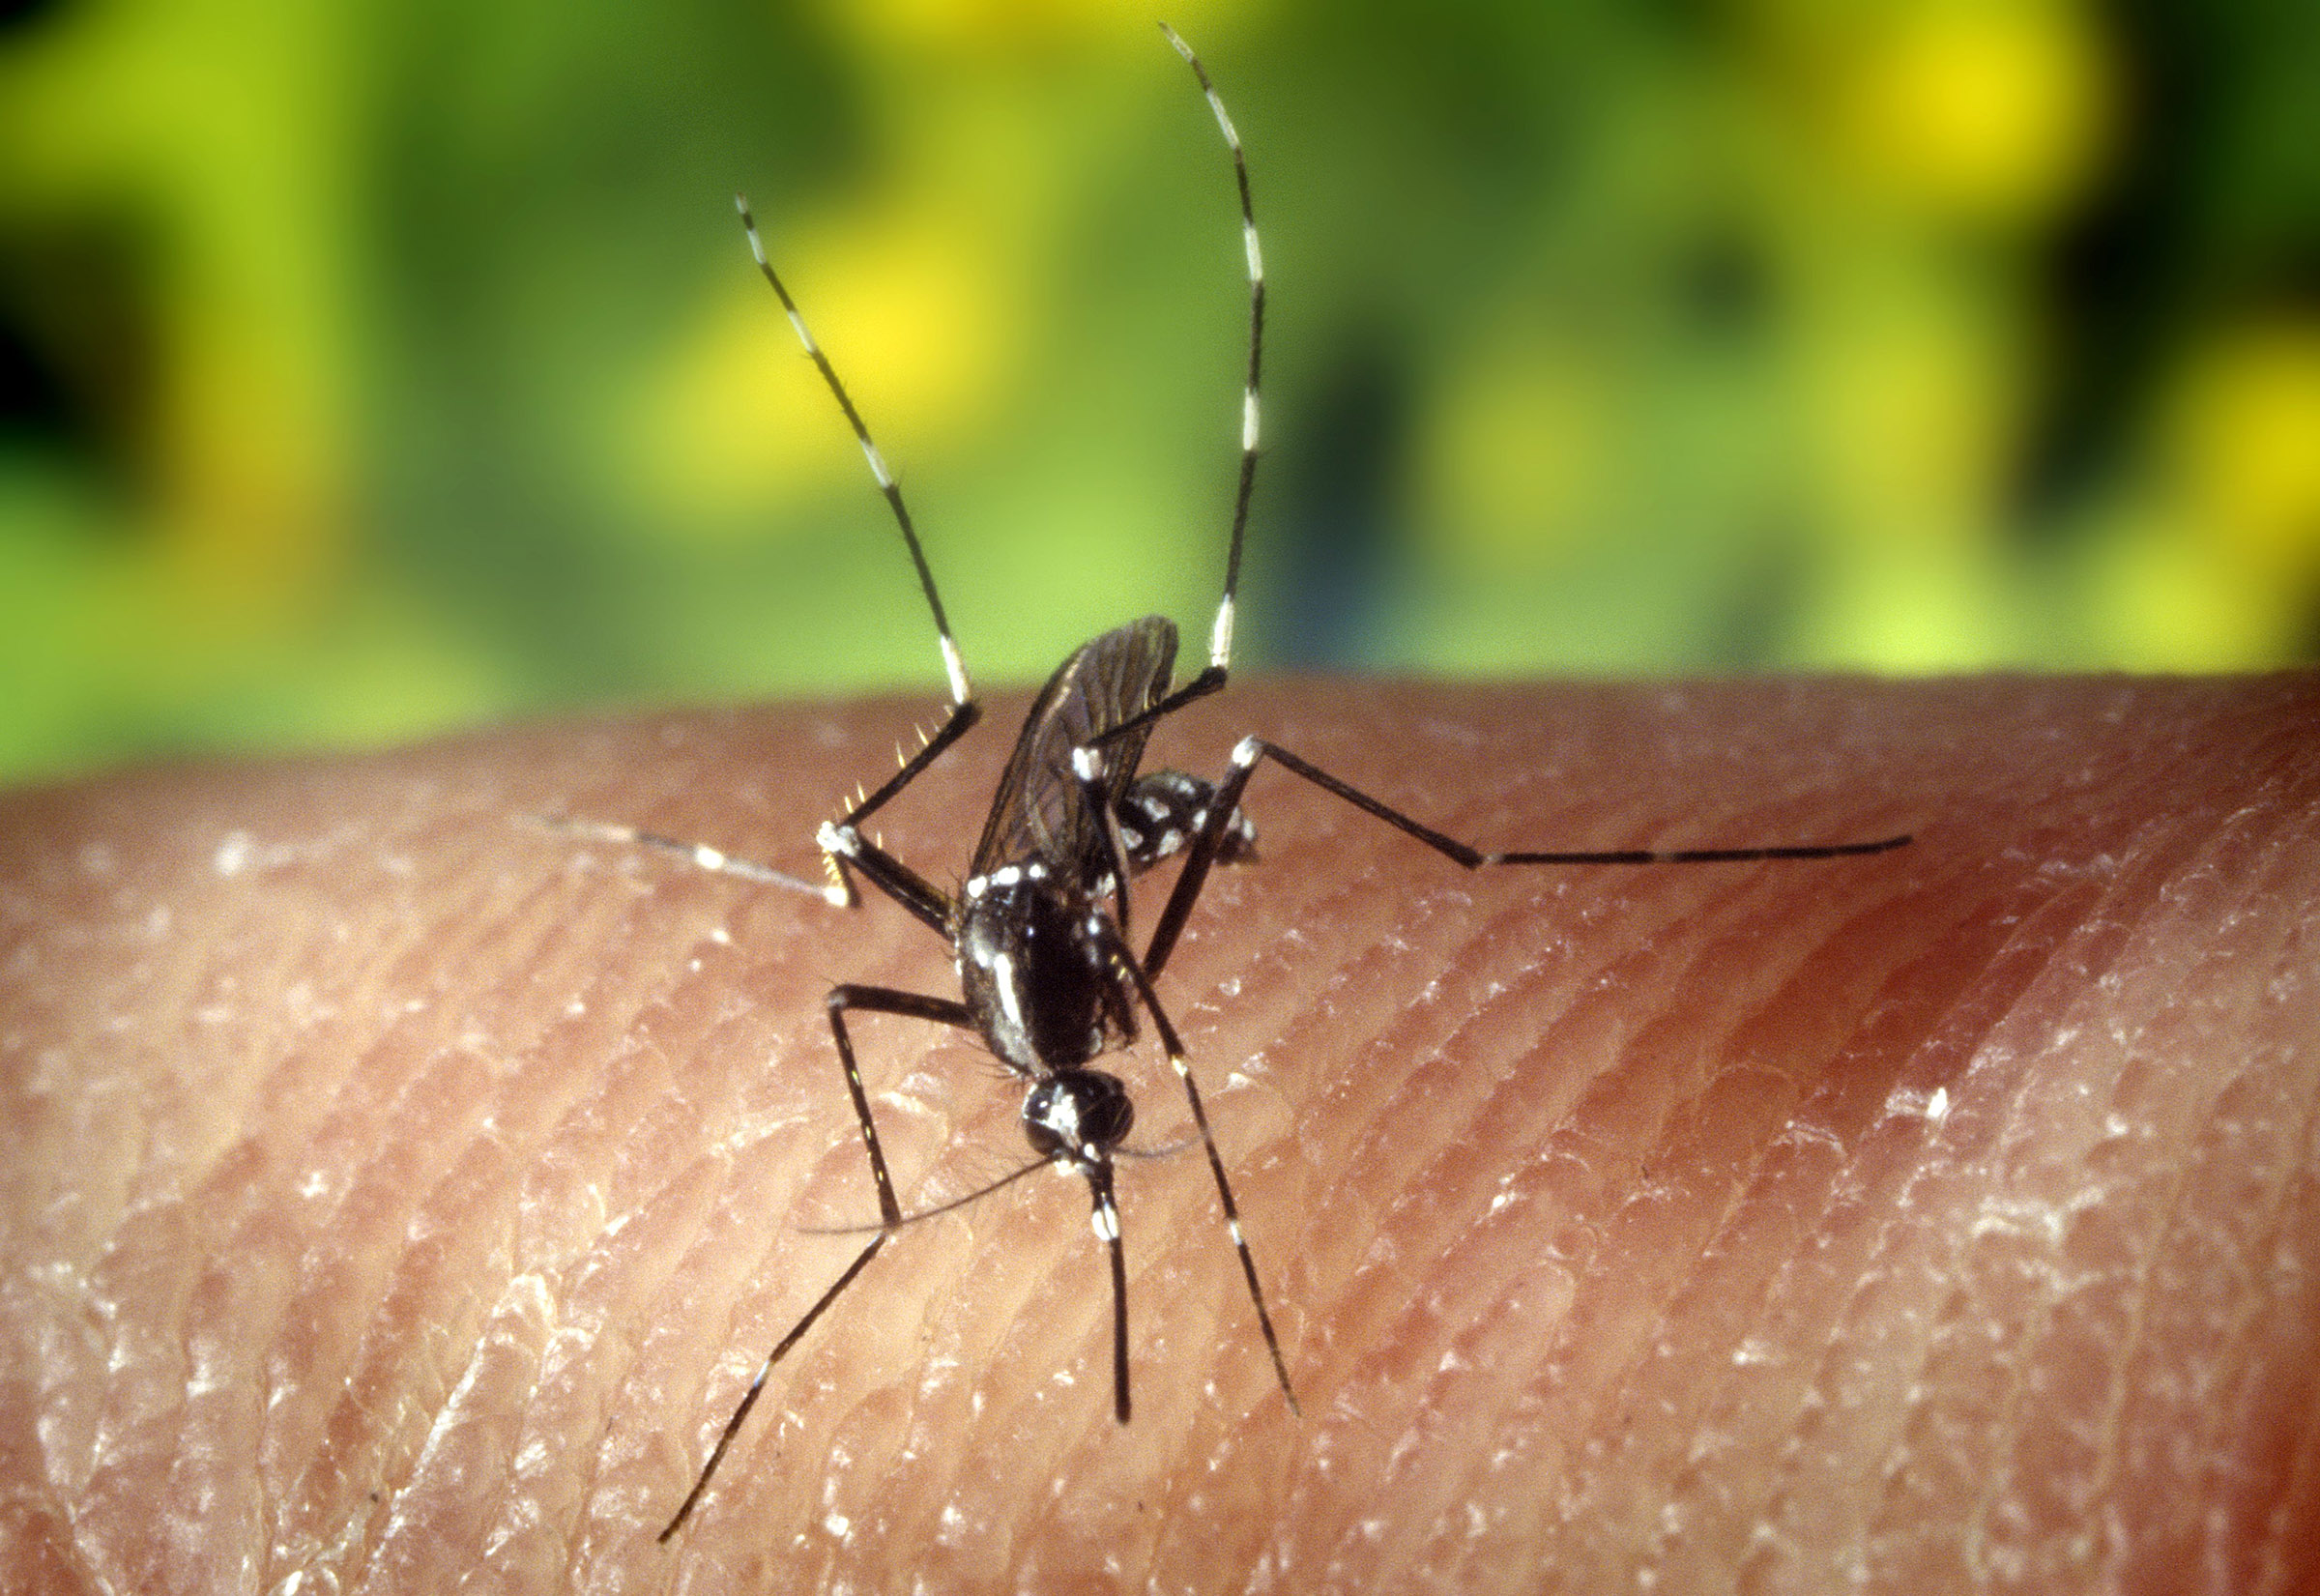 Baltimore blocks host bigger, more dangerous mosquitoes